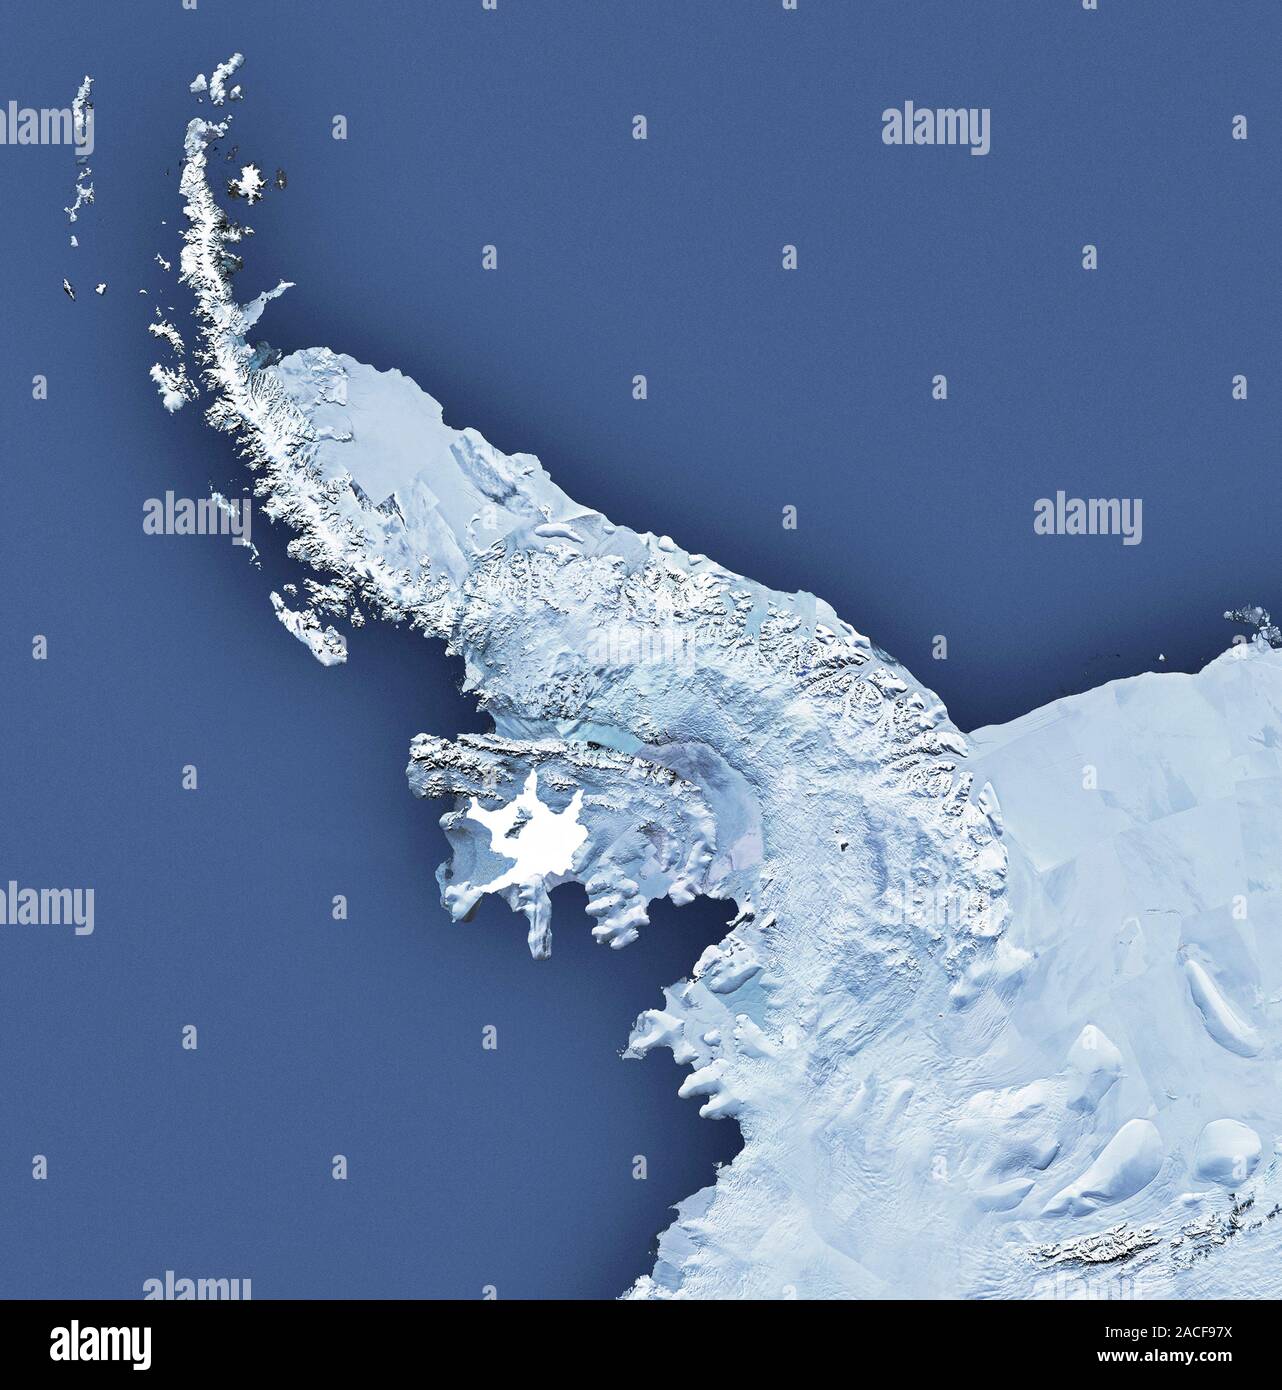 Антарктический полуостров на востоке. Полуостров Файлдс Антарктика. Шельфовый ледник Мак-мёрдо. Шельфовые ледники Антарктиды антарктический полуостров. Антарктический полуостров из космоса.